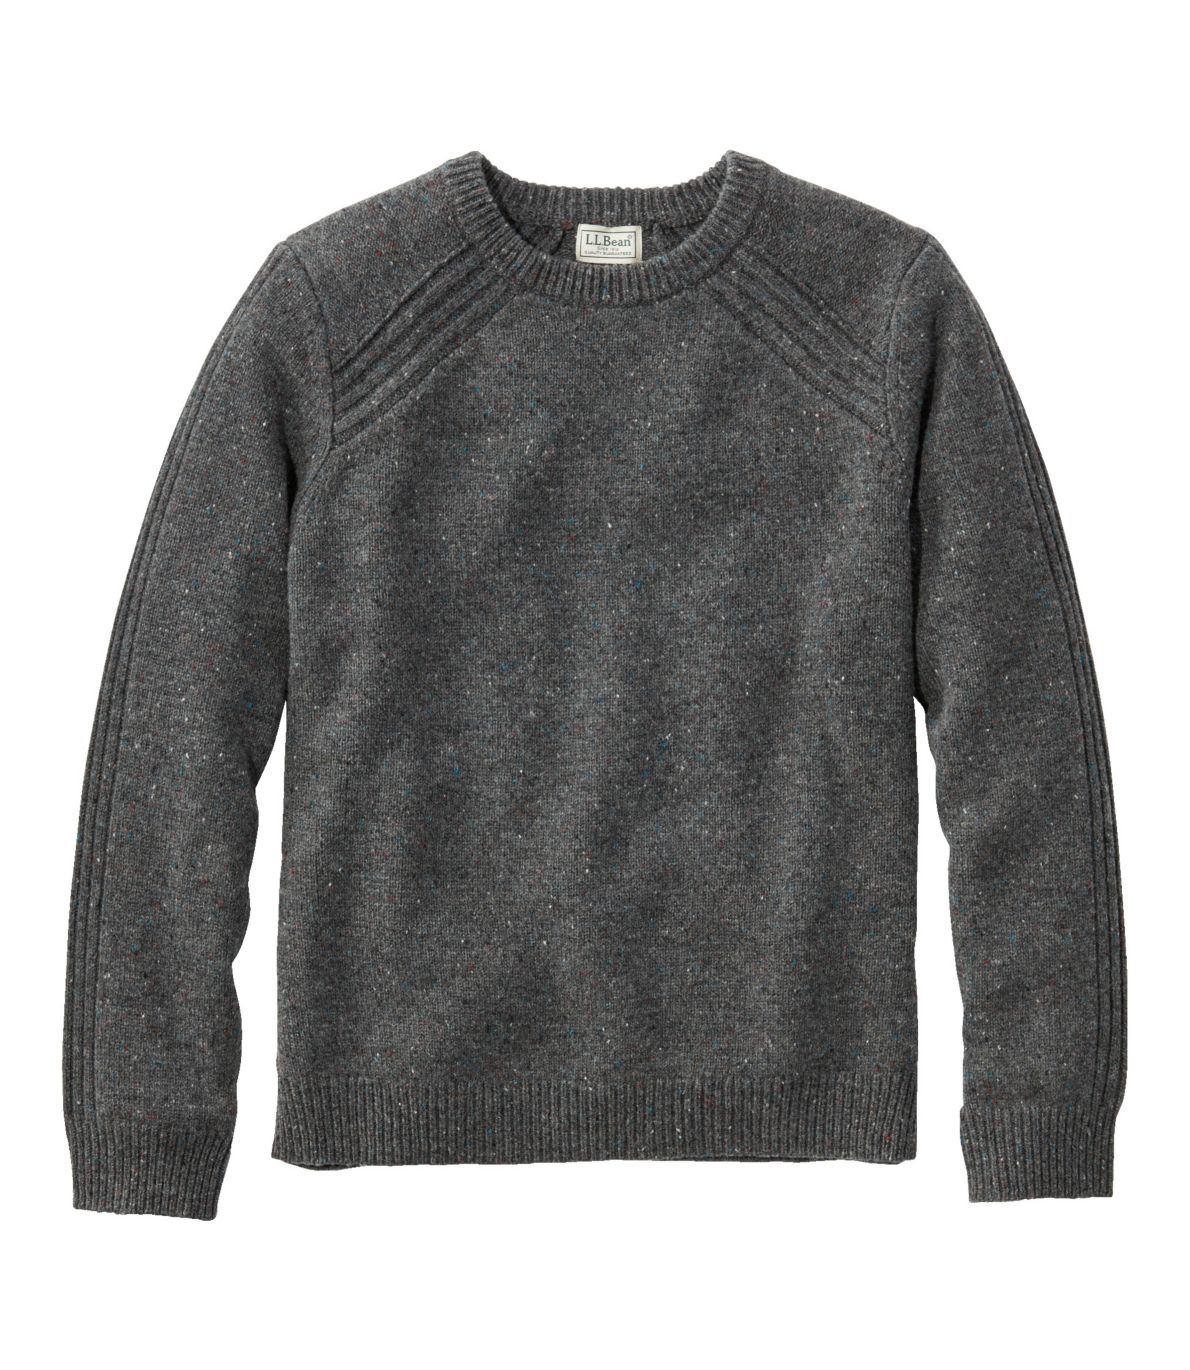 Men's Rangeley Merino Sweater, Crewneck